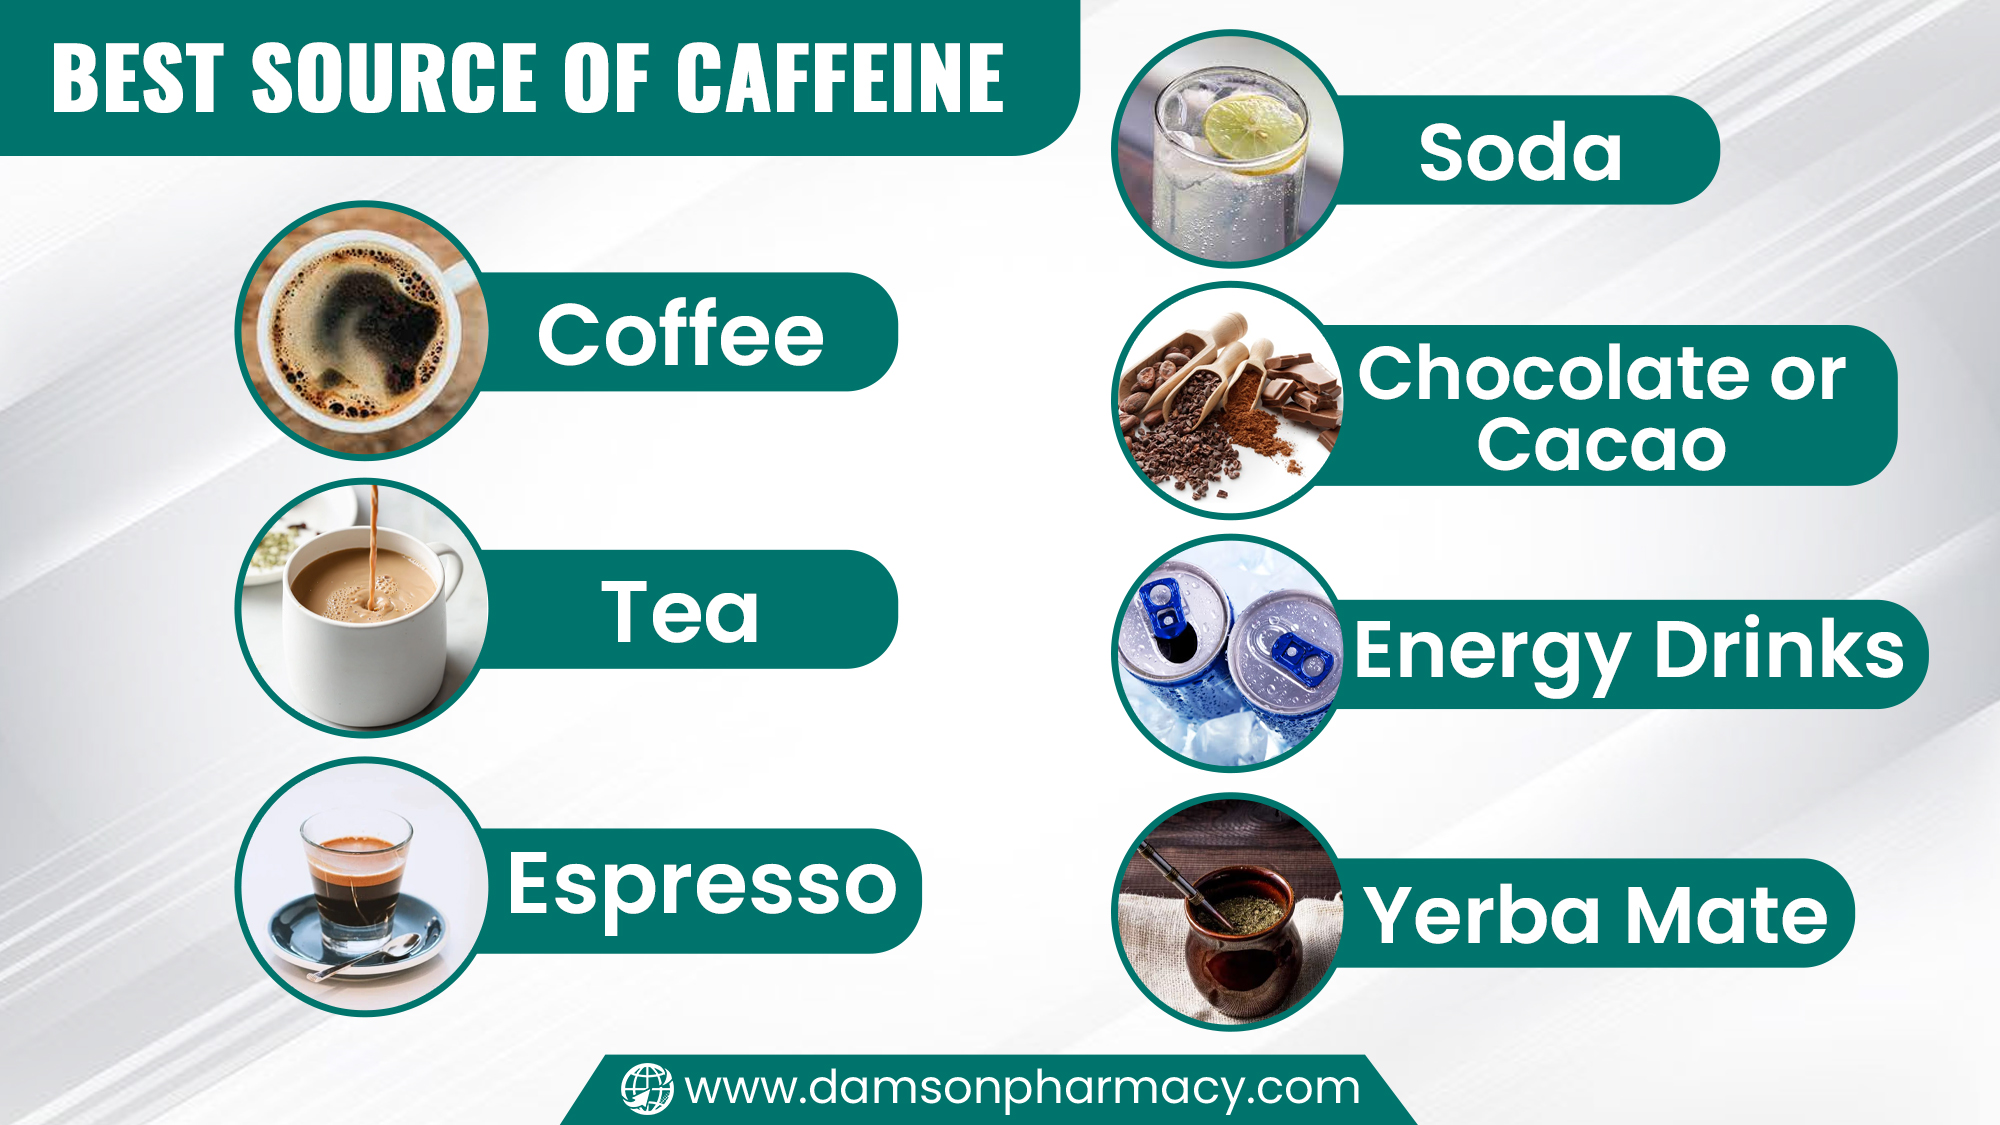 Best Source of Caffeine